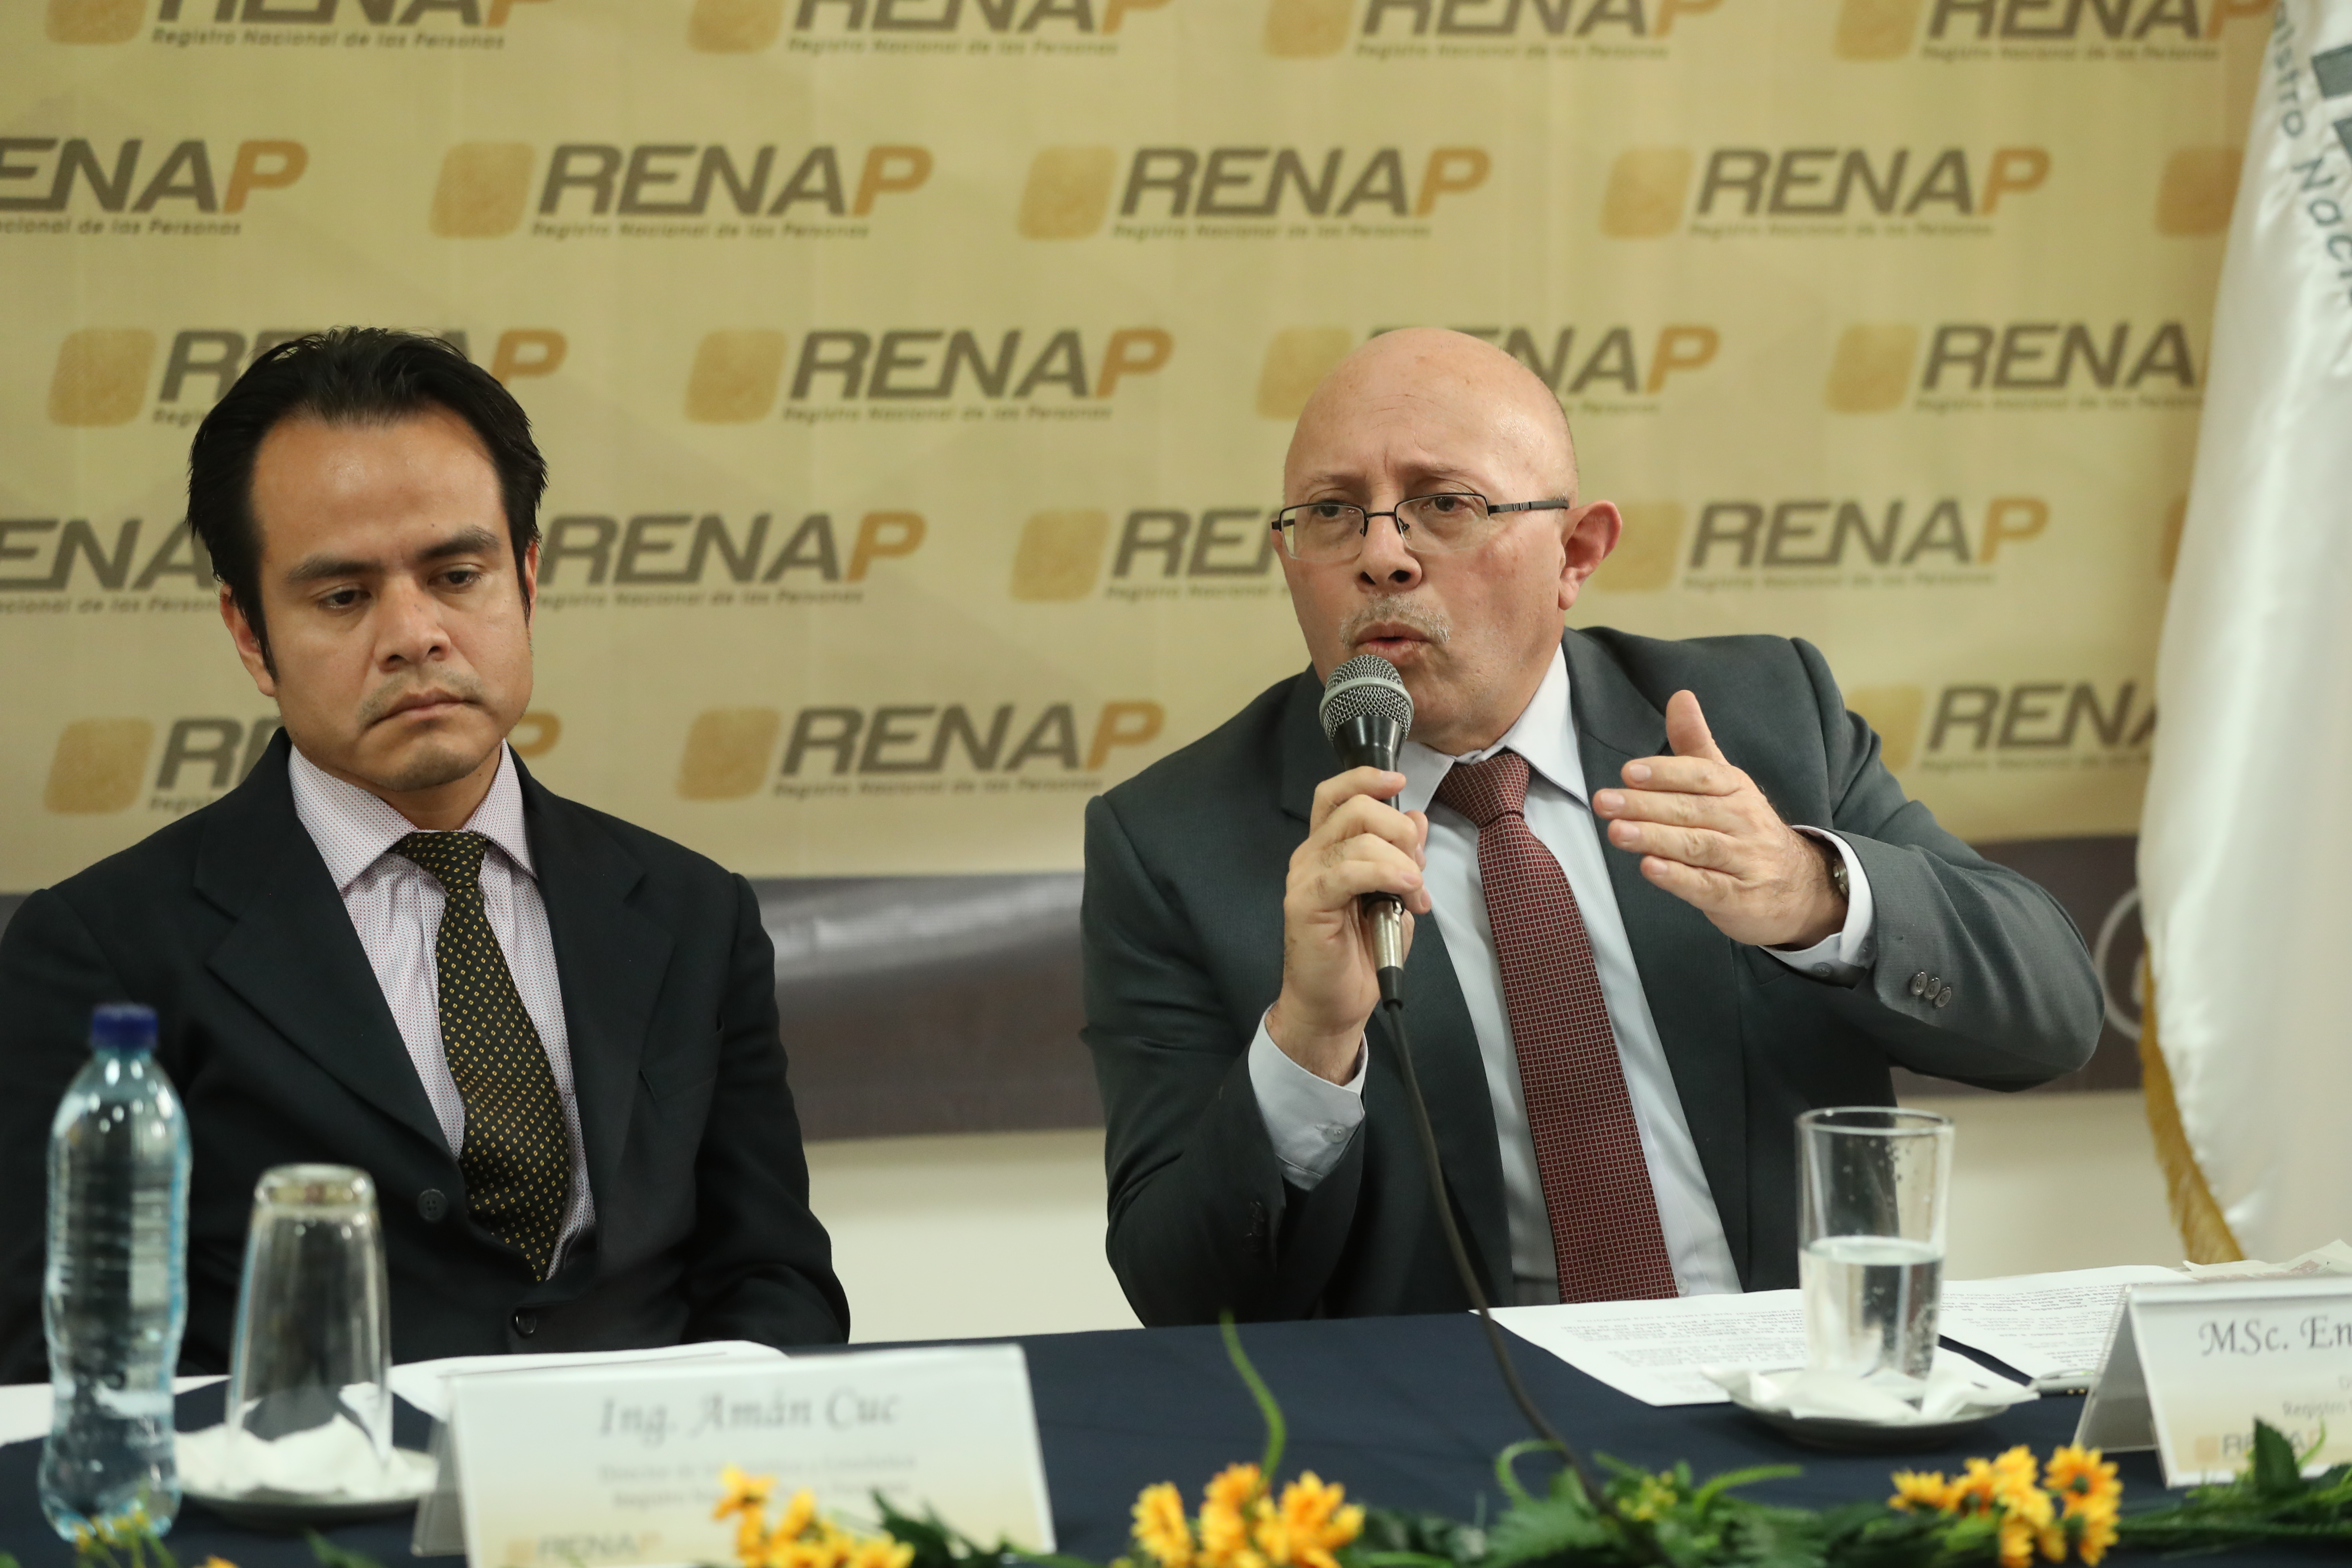 Amán Cuc, director de Informática y Estadística y Enrique Alonzo, director ejecutivo del Renap admiten un fallo en el sistema de almacenamiento de datos. (Foto Prensa Libre: Esbin García)